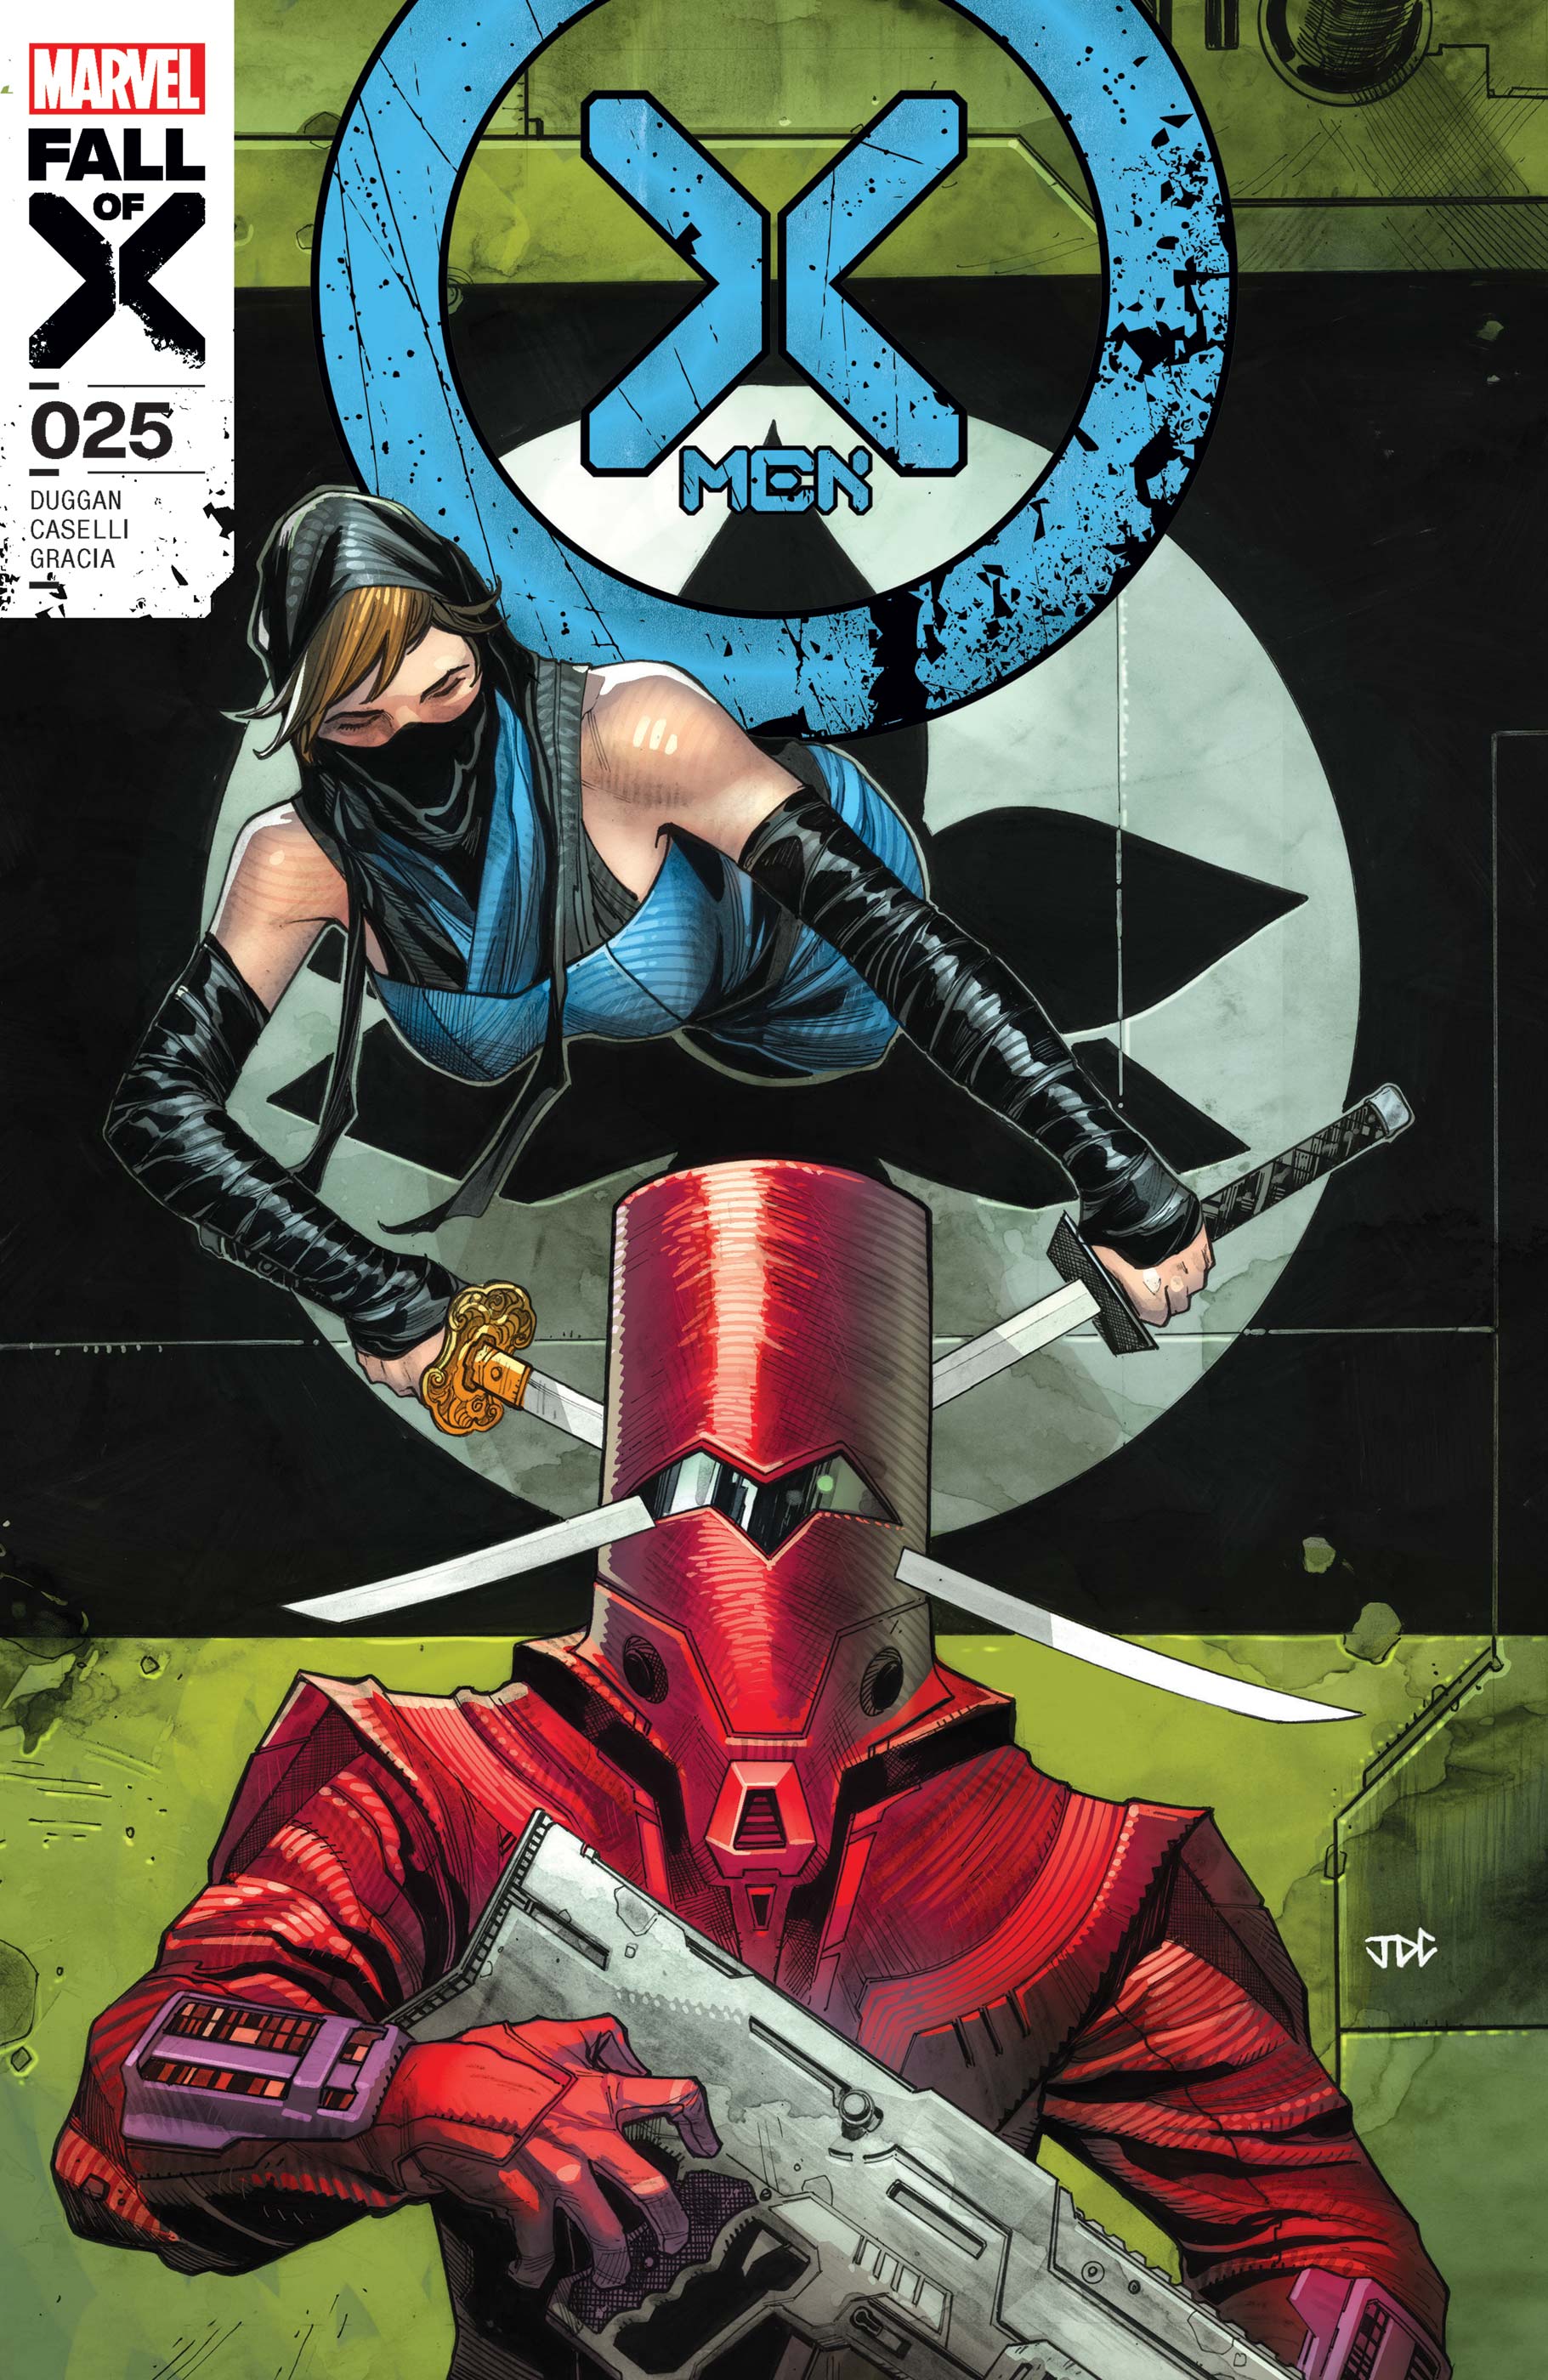 X-Men #25 (Fall of the X-Men) (2021)